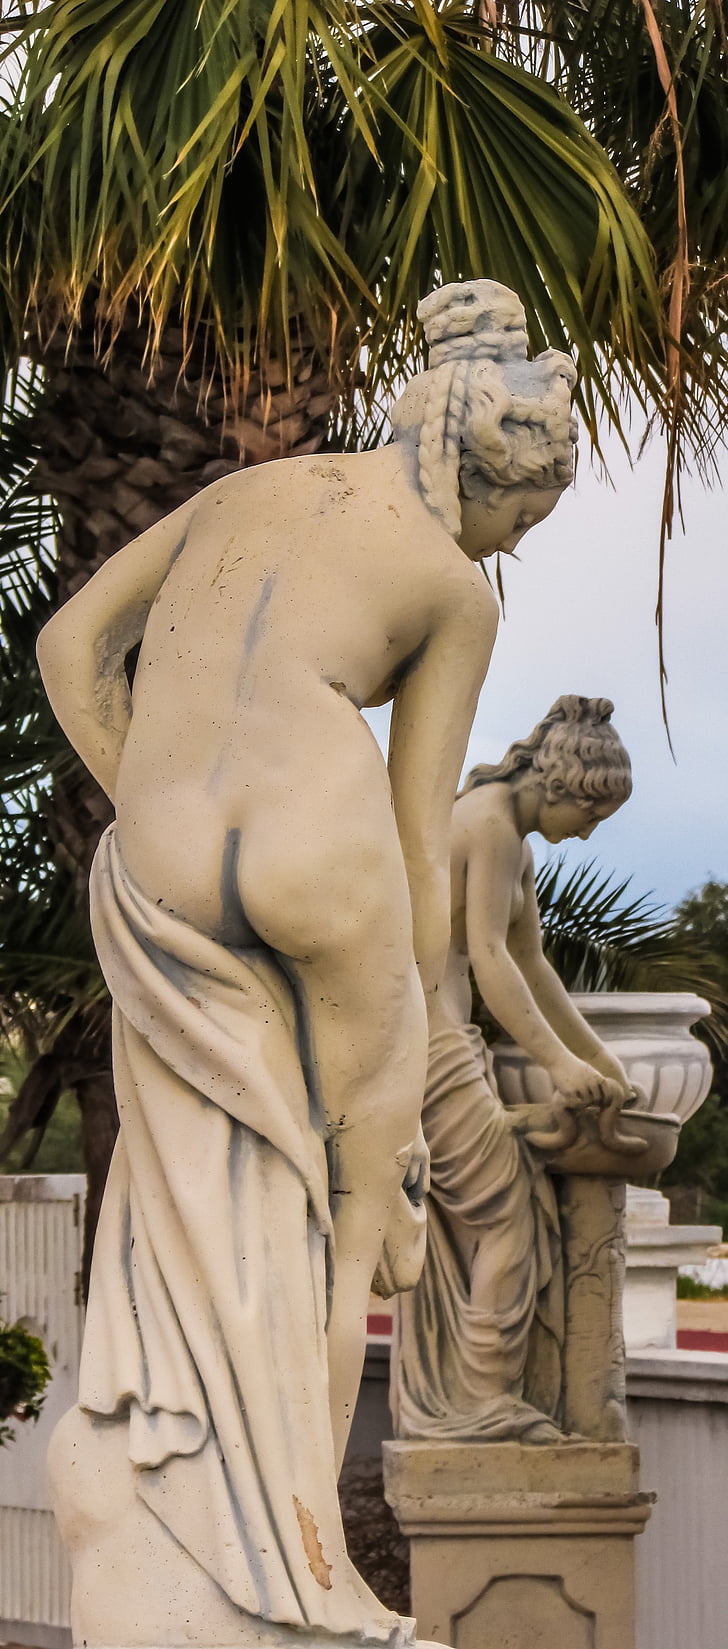 Cypern, Ayia napa, vatten världen, Afrodite, skulpturer